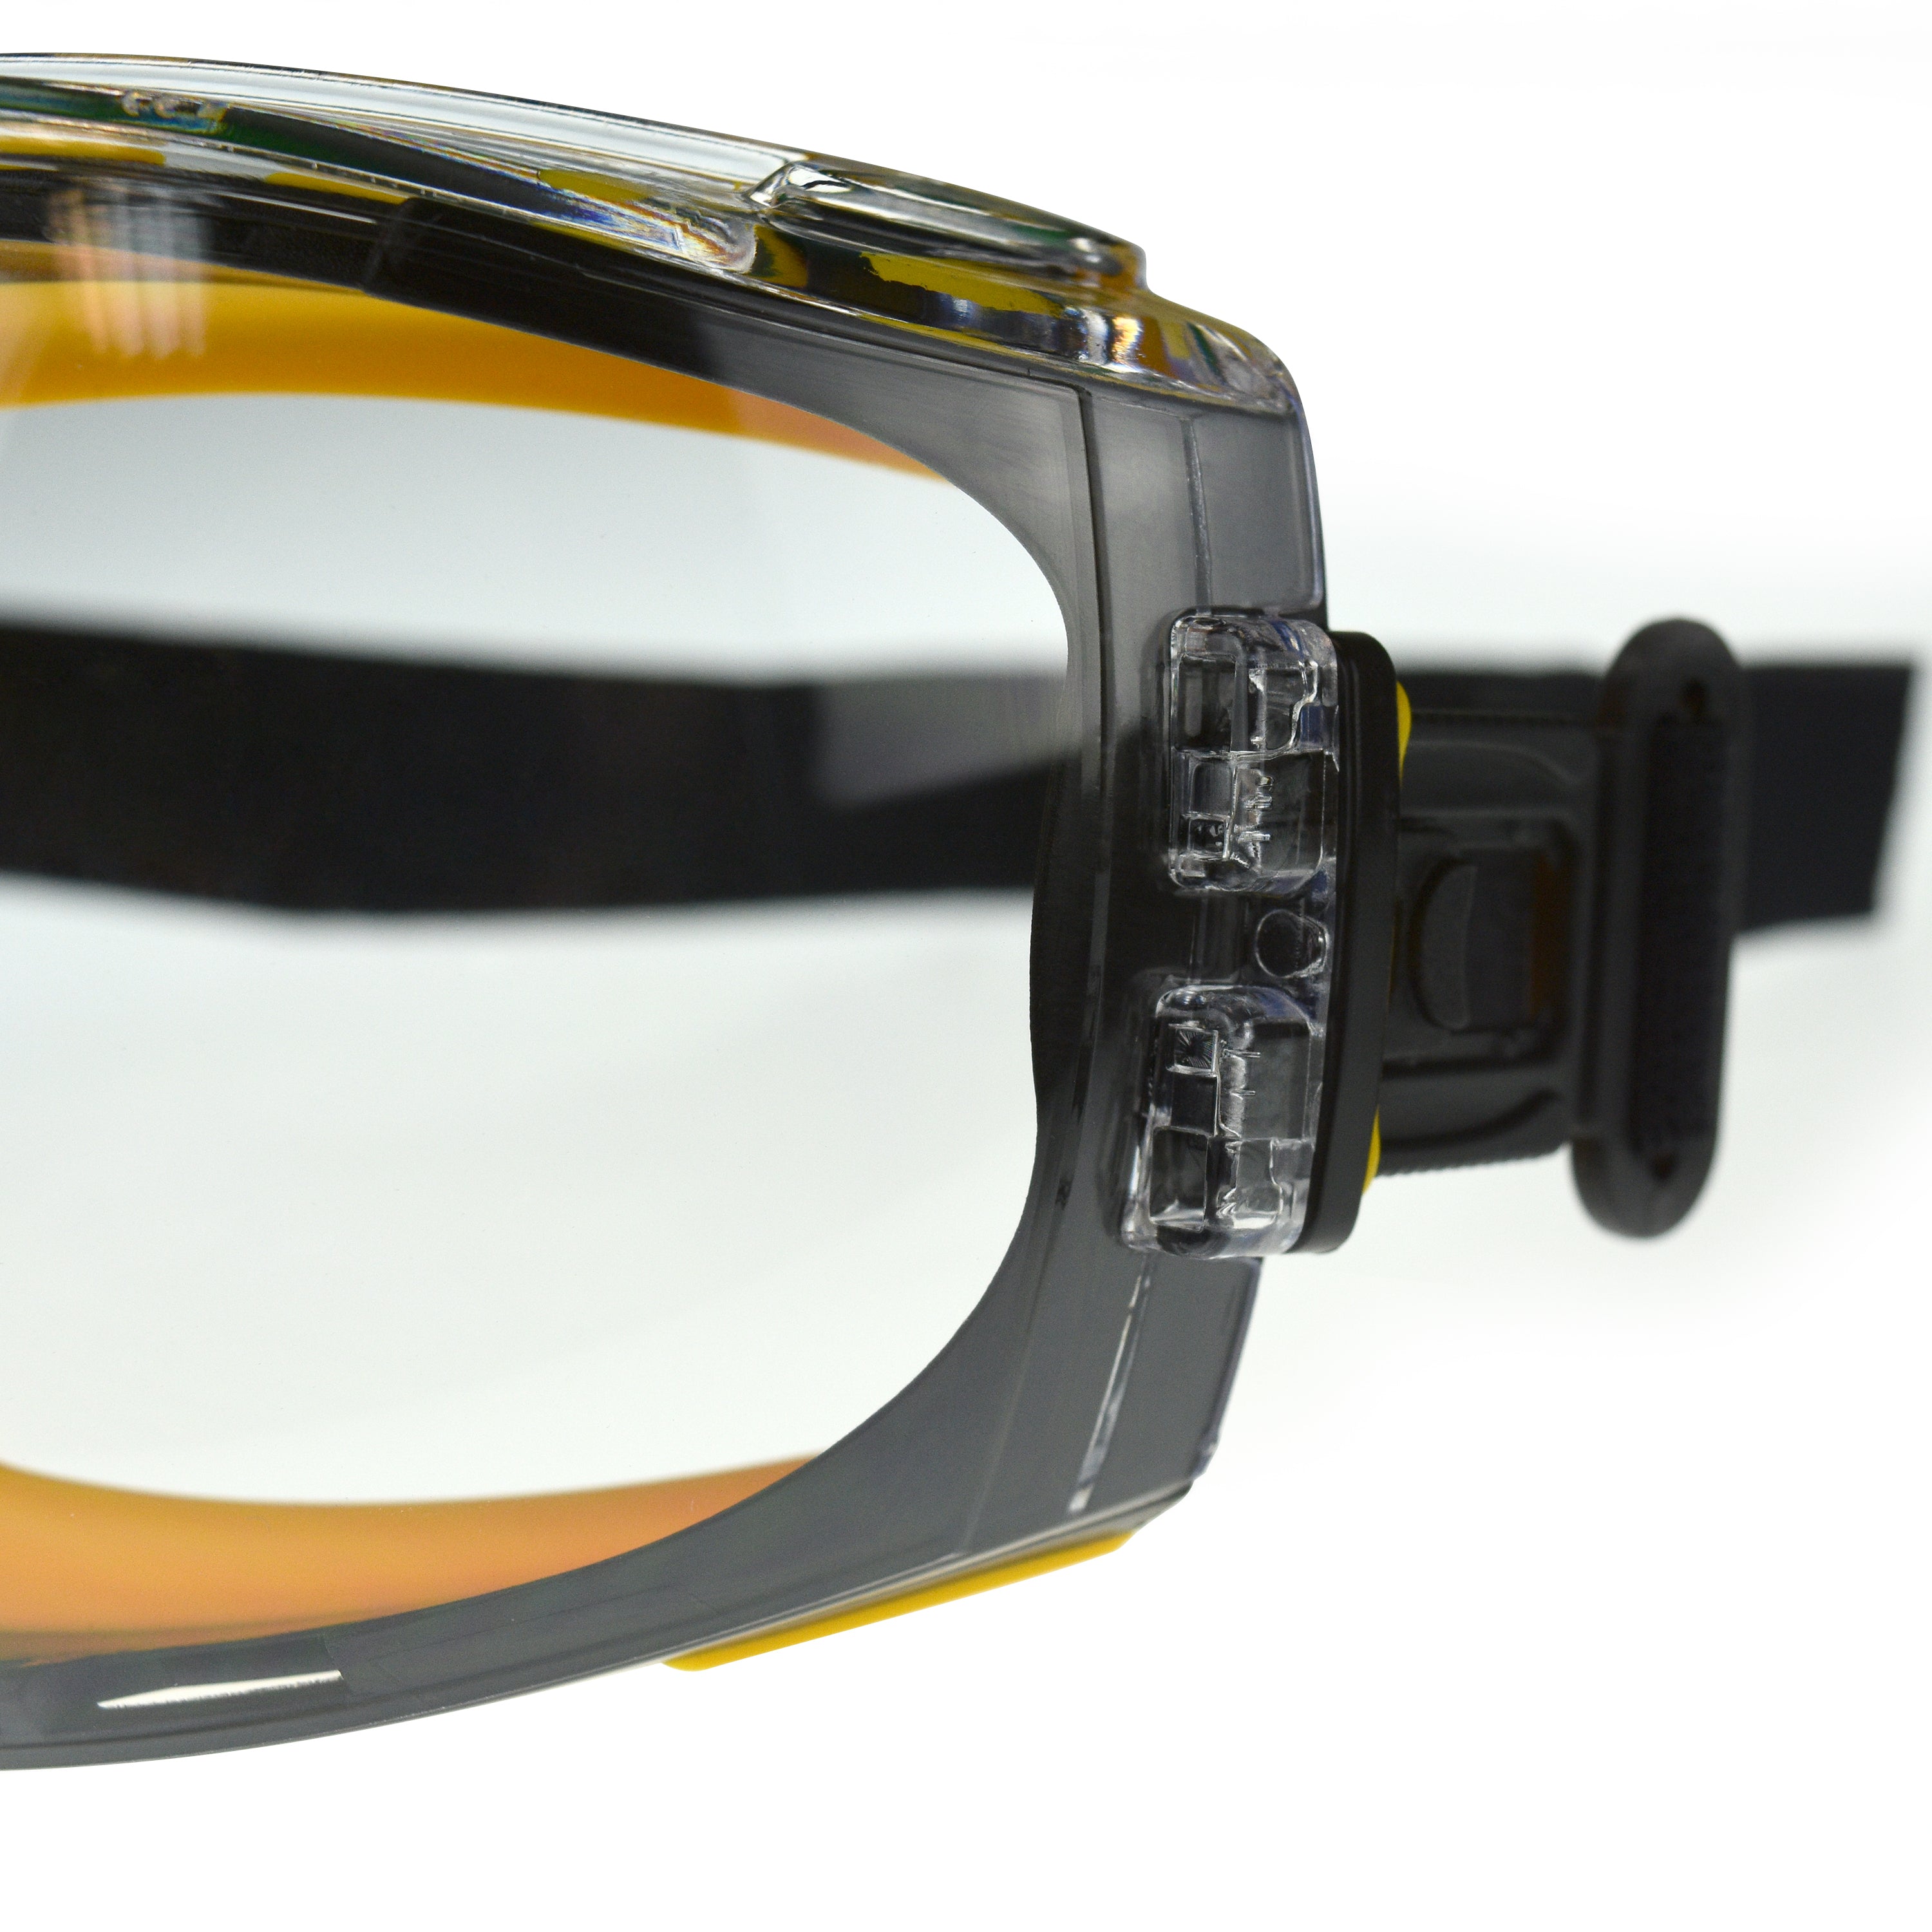 DeWALT Concealer Safety Goggles